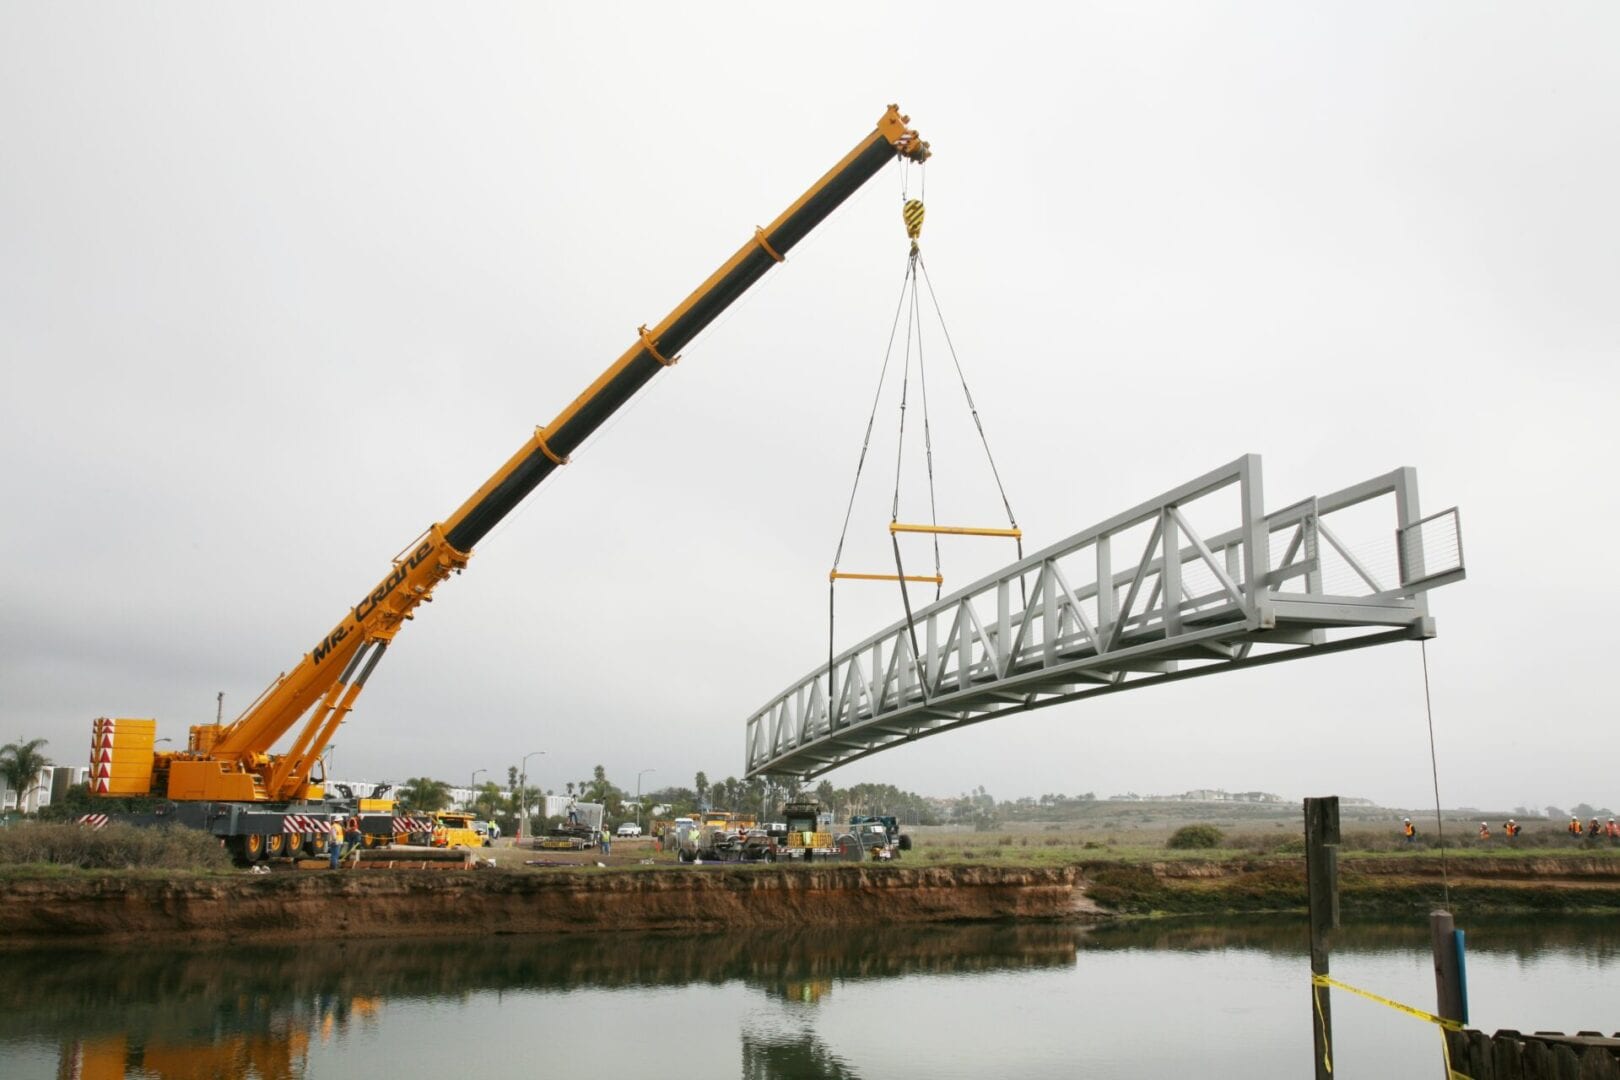 A crane lifting a bridge